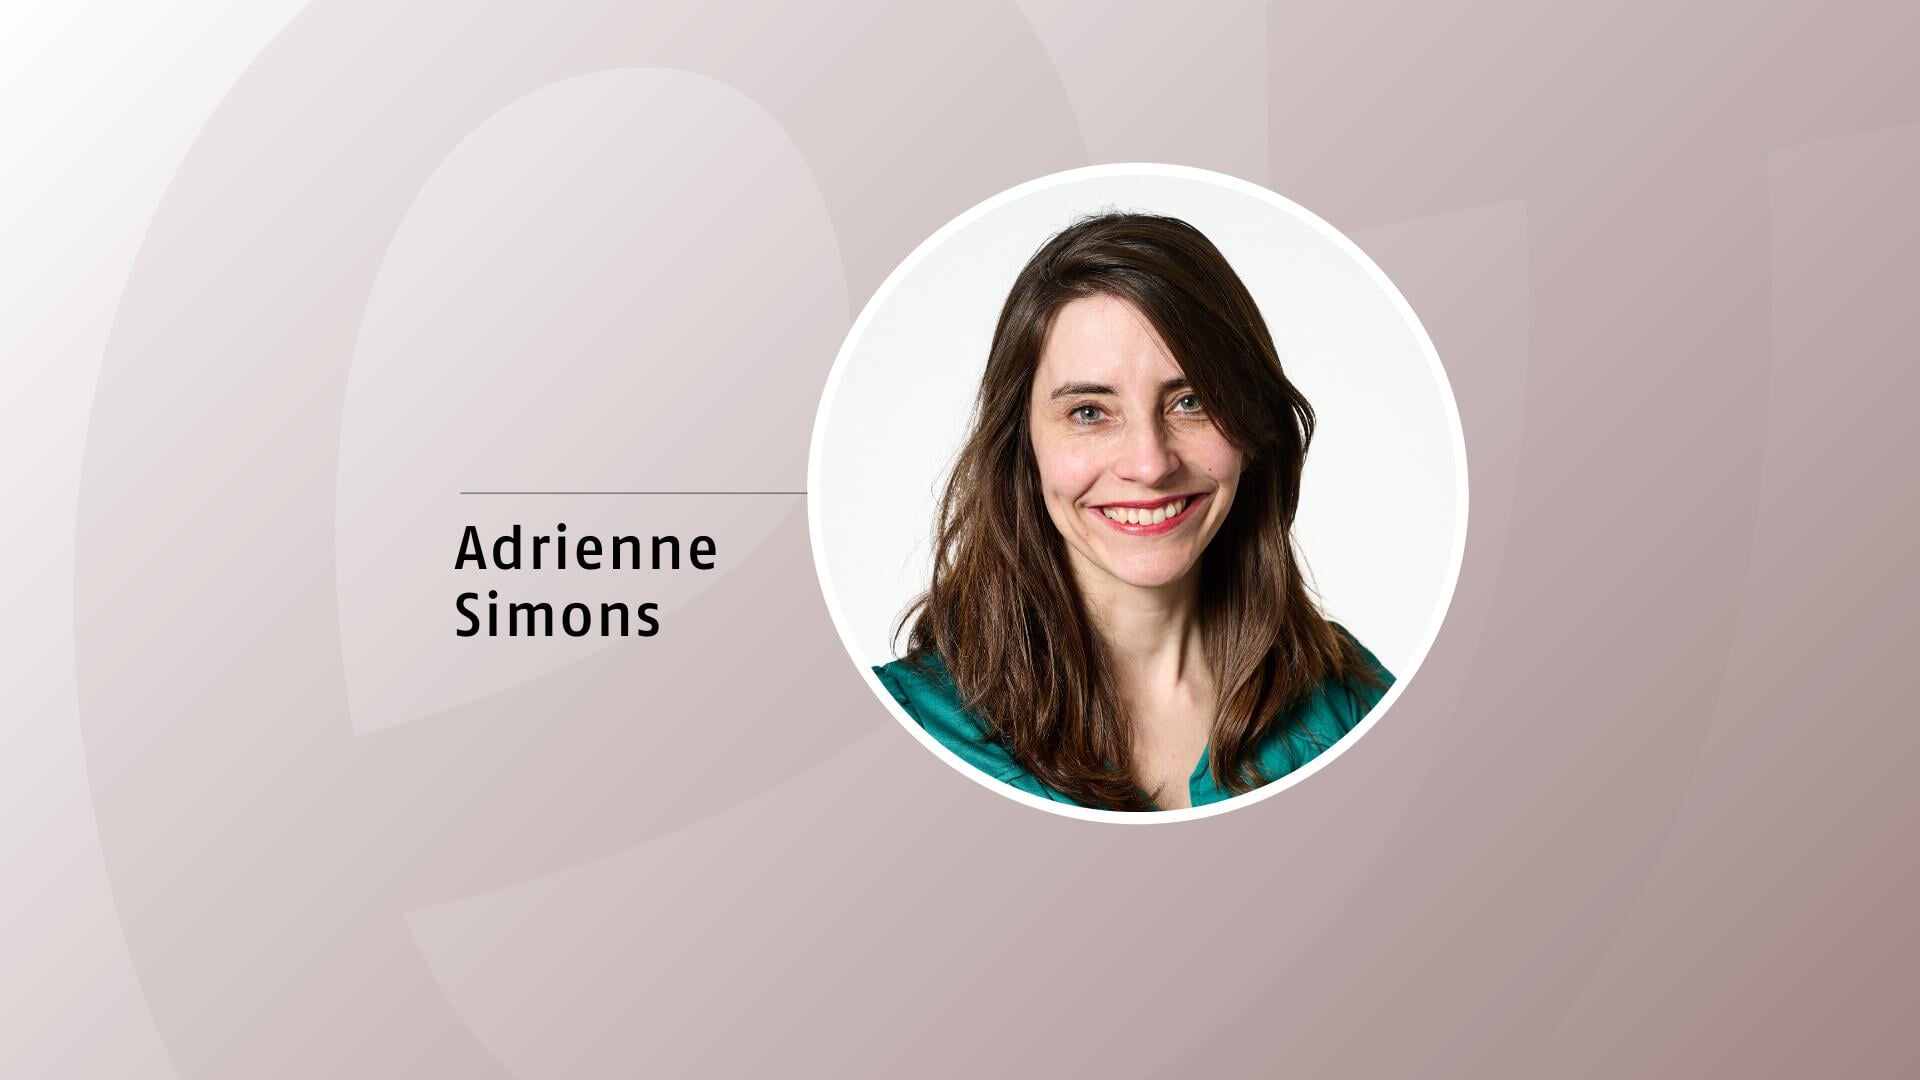 Adrienne Simons is conceptontwikkelaar bij de Evangelische Omroep.